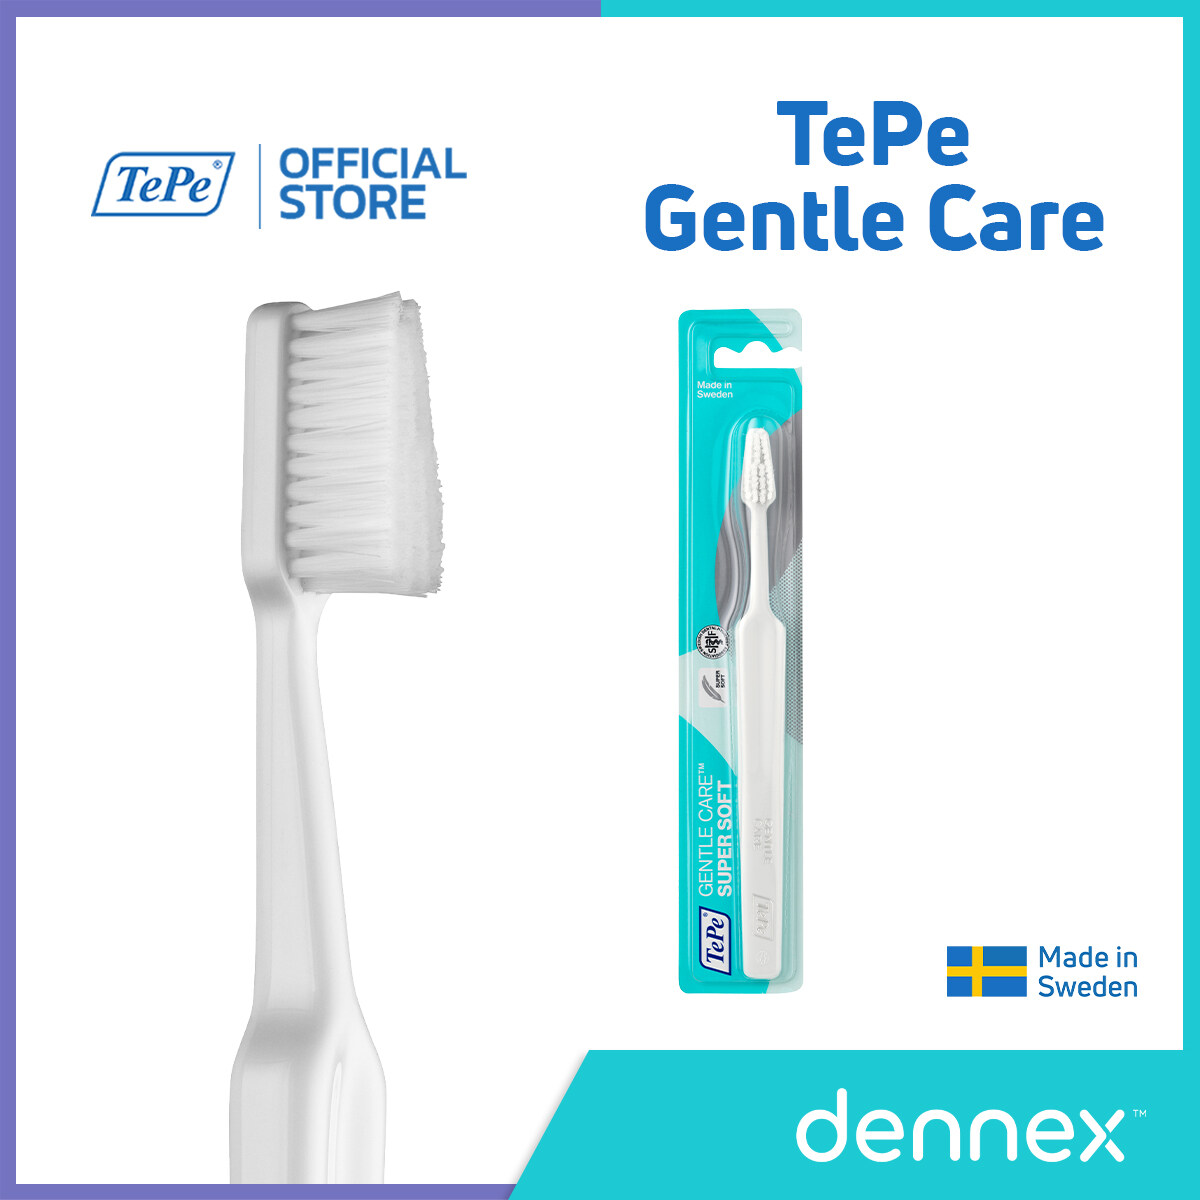 รีวิว TePe Gentle Care แปรงสีฟัน ขนนุ่มพิเศษ สำหรับผู้ที่มีอาการ เจ็บเหงือก แปรงสีฟันเทเป้ เจนเทิล แคร์ 1ชิ้น สีขาว By Dennex